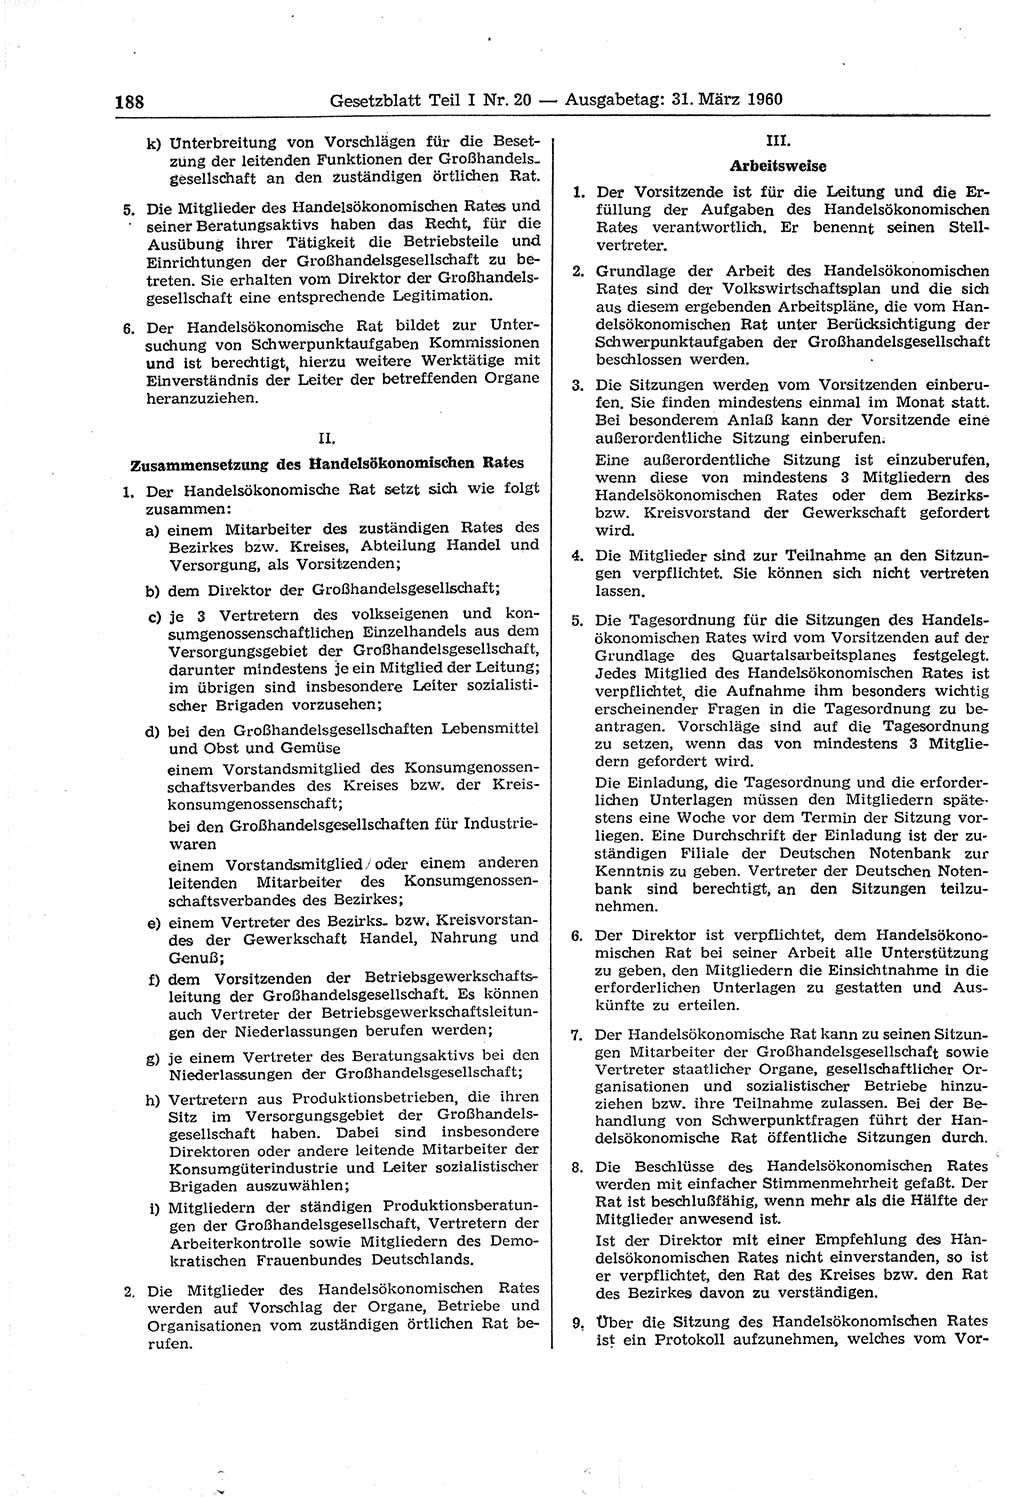 Gesetzblatt (GBl.) der Deutschen Demokratischen Republik (DDR) Teil Ⅰ 1960, Seite 188 (GBl. DDR Ⅰ 1960, S. 188)